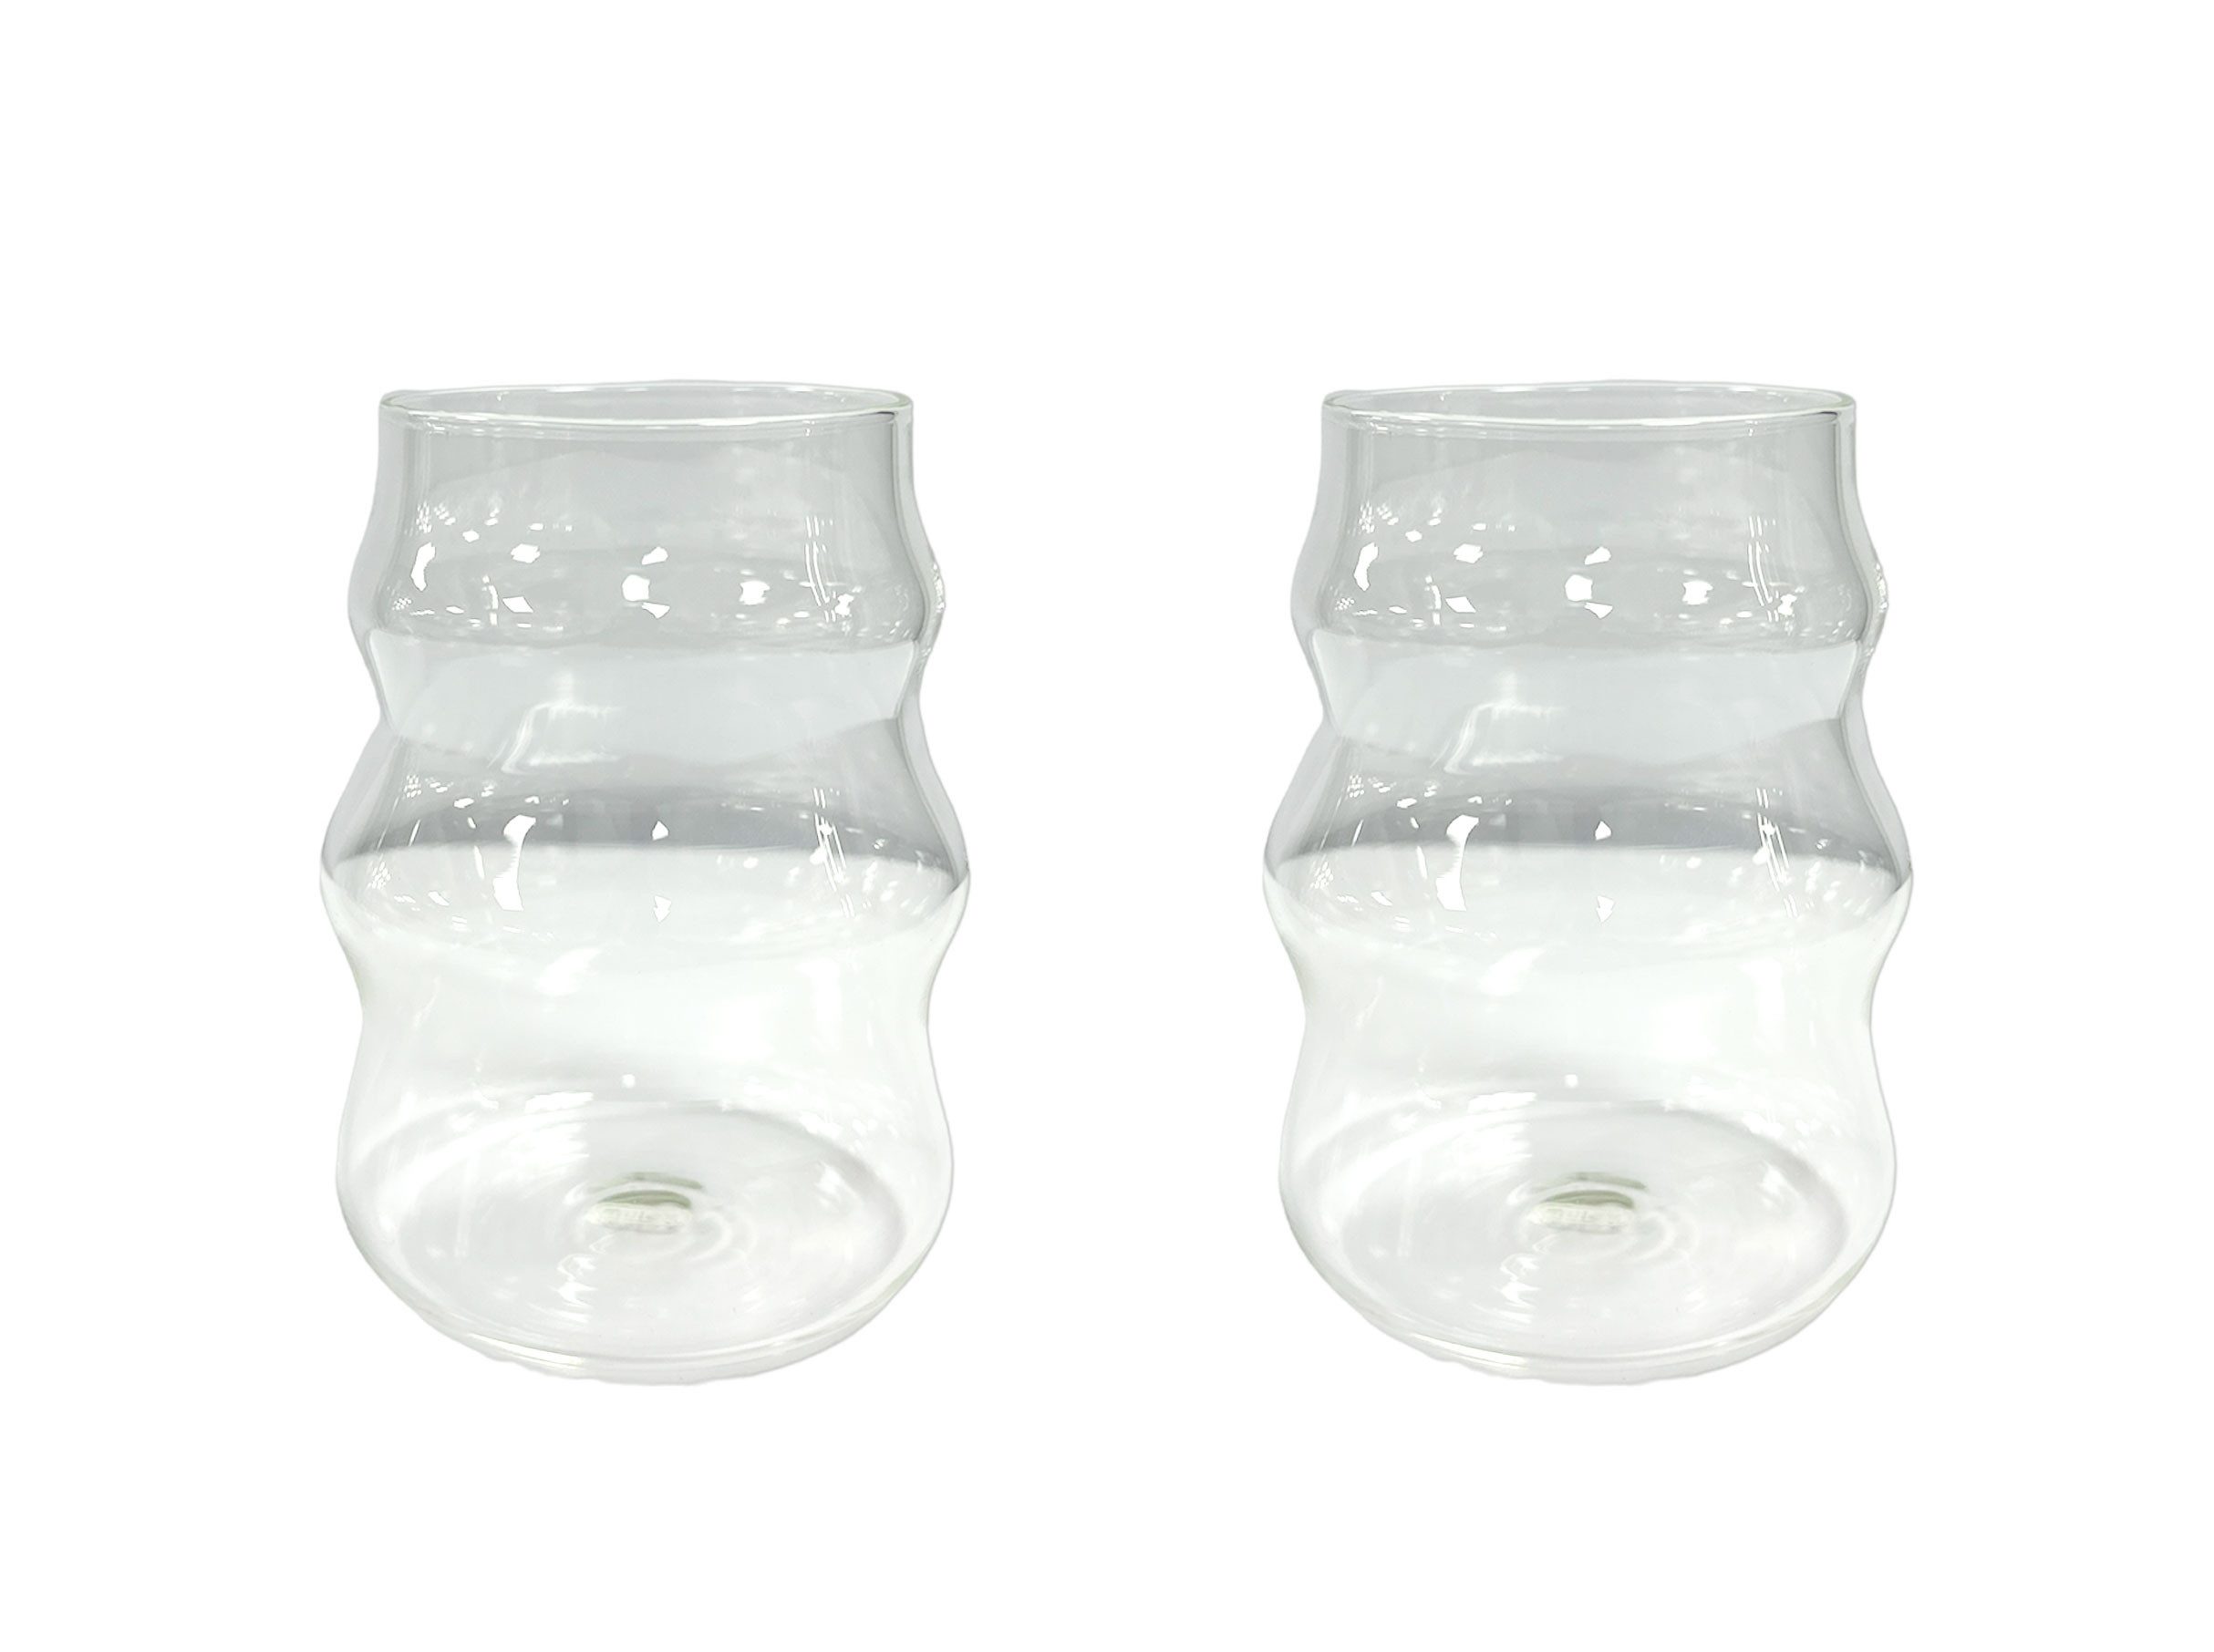 Mulex Gläser-Set Mulex-Bubble-2, Glas, 2-teiligen Longdrinkglas Gläser mit Riffelung